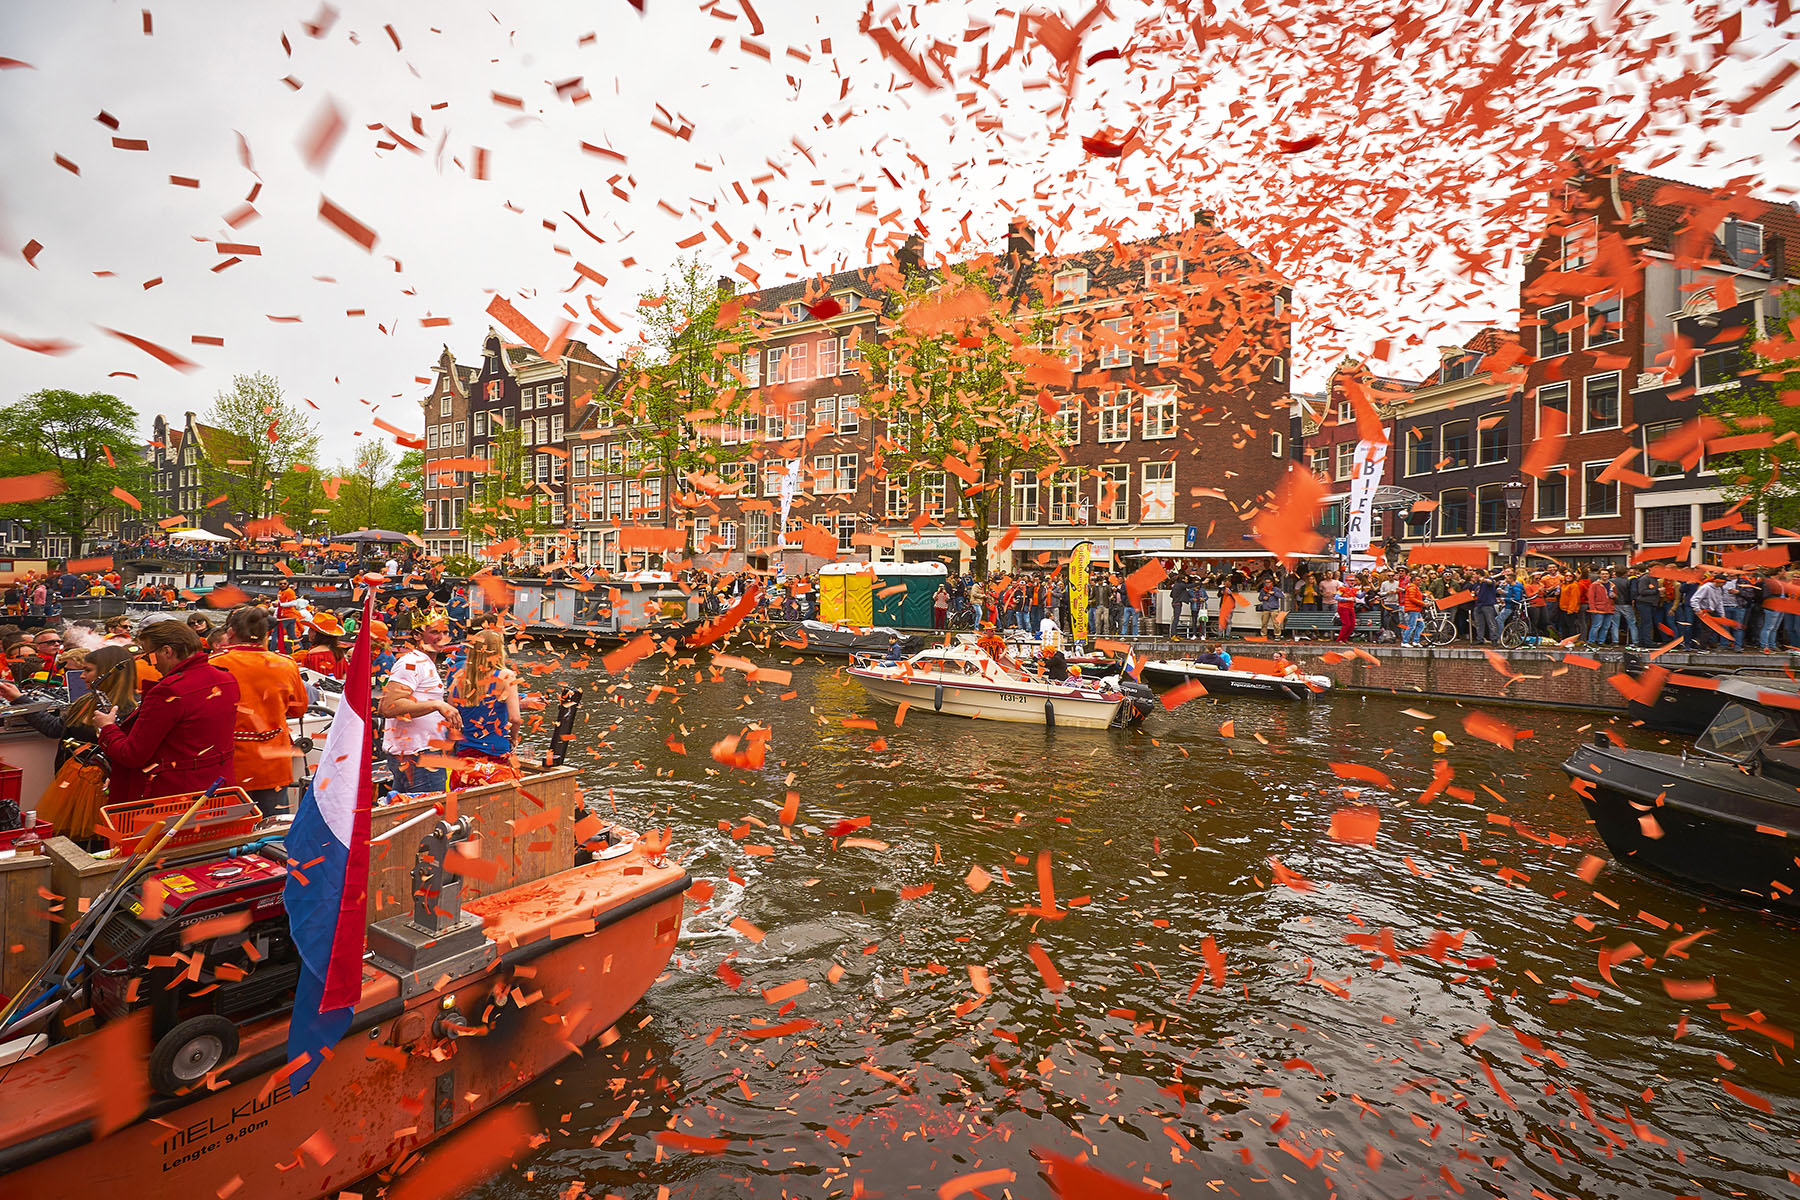 تحتفل هولندا بليلة الملك بعد عامين من الوباء